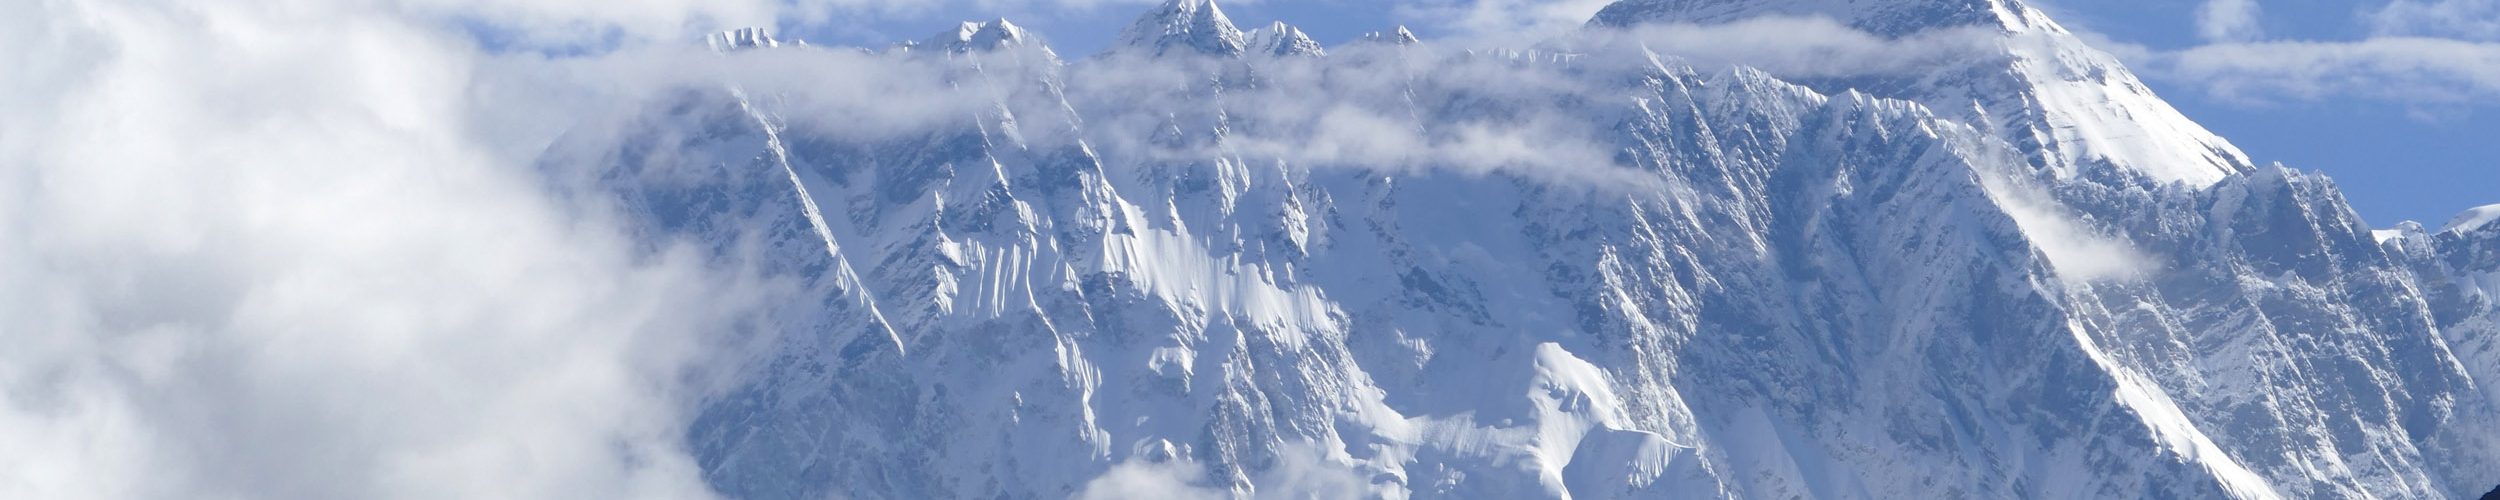 Hvad koster det at bestige Mount Everest